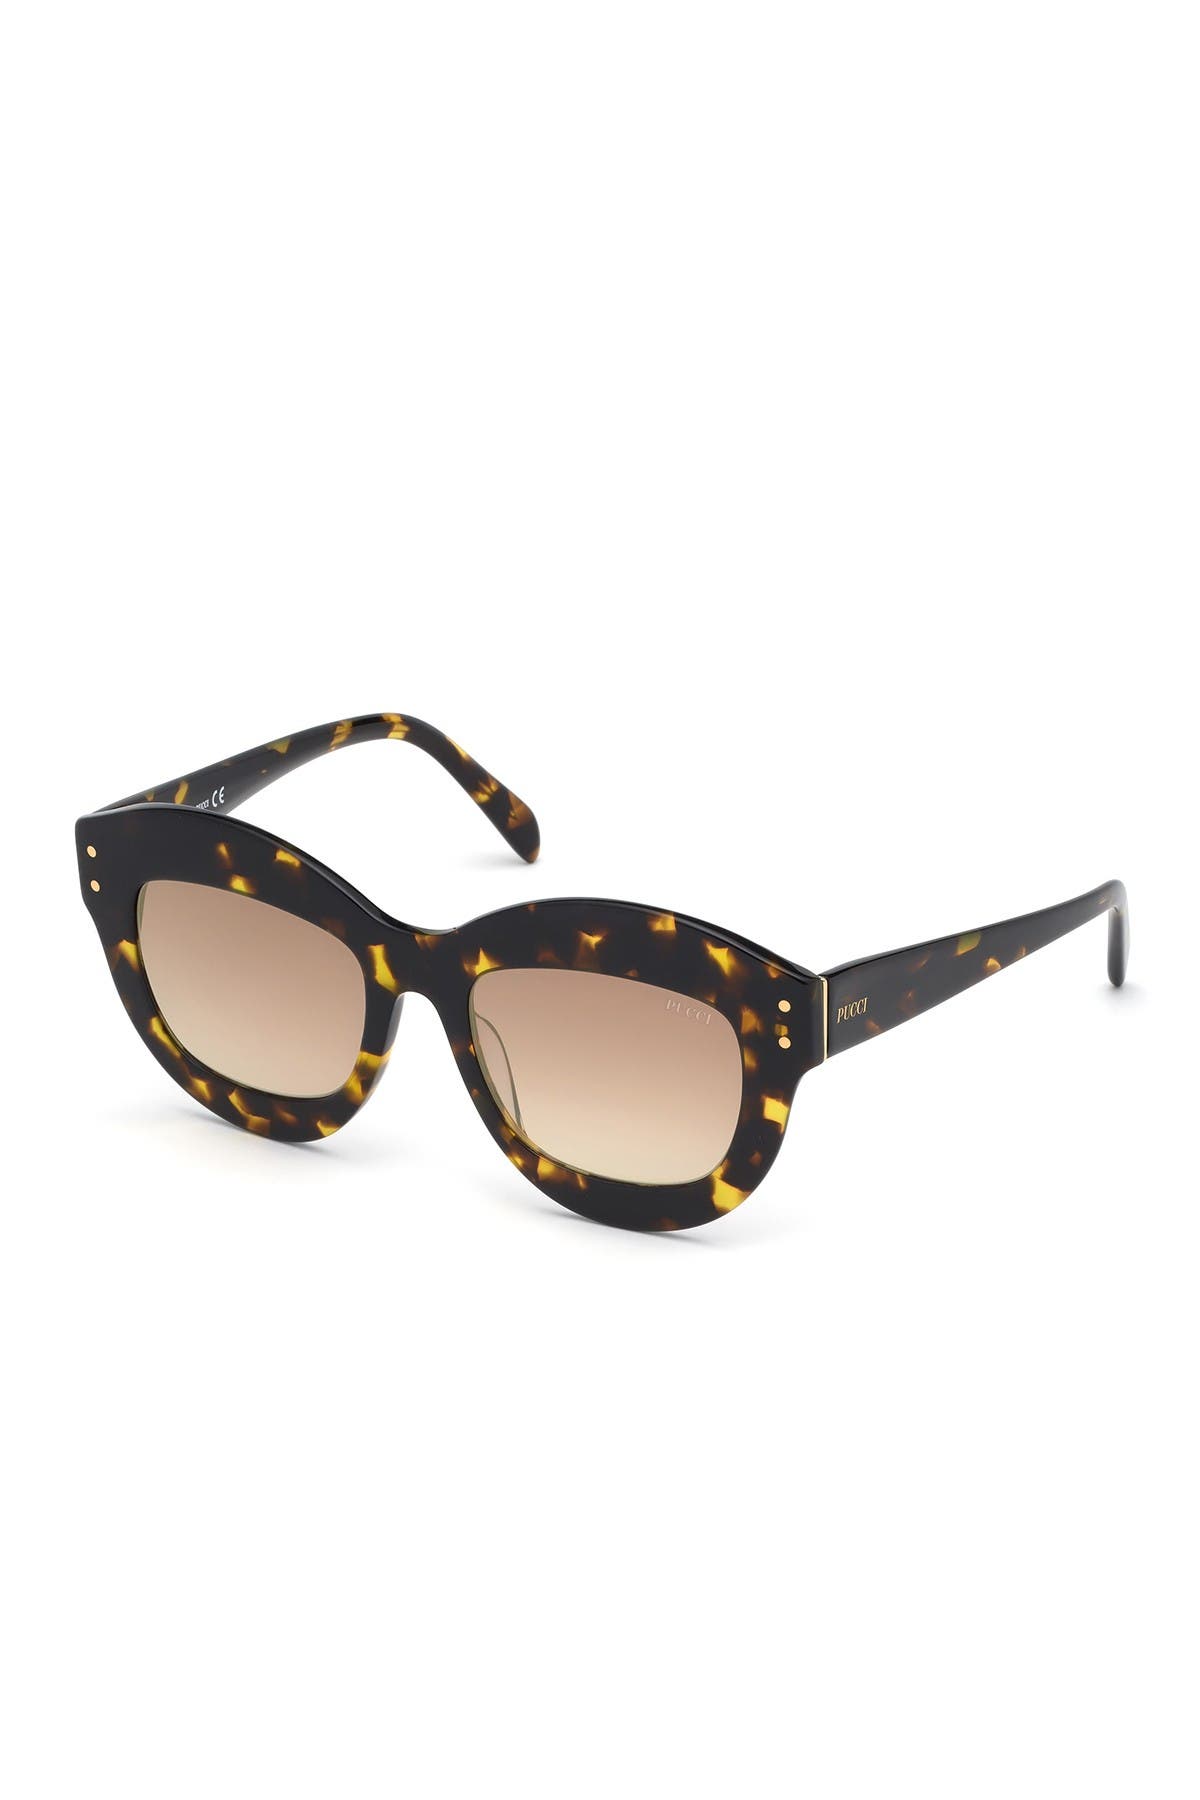 Emilio Pucci 51mm Round Sunglasses In Dhav/brnmr